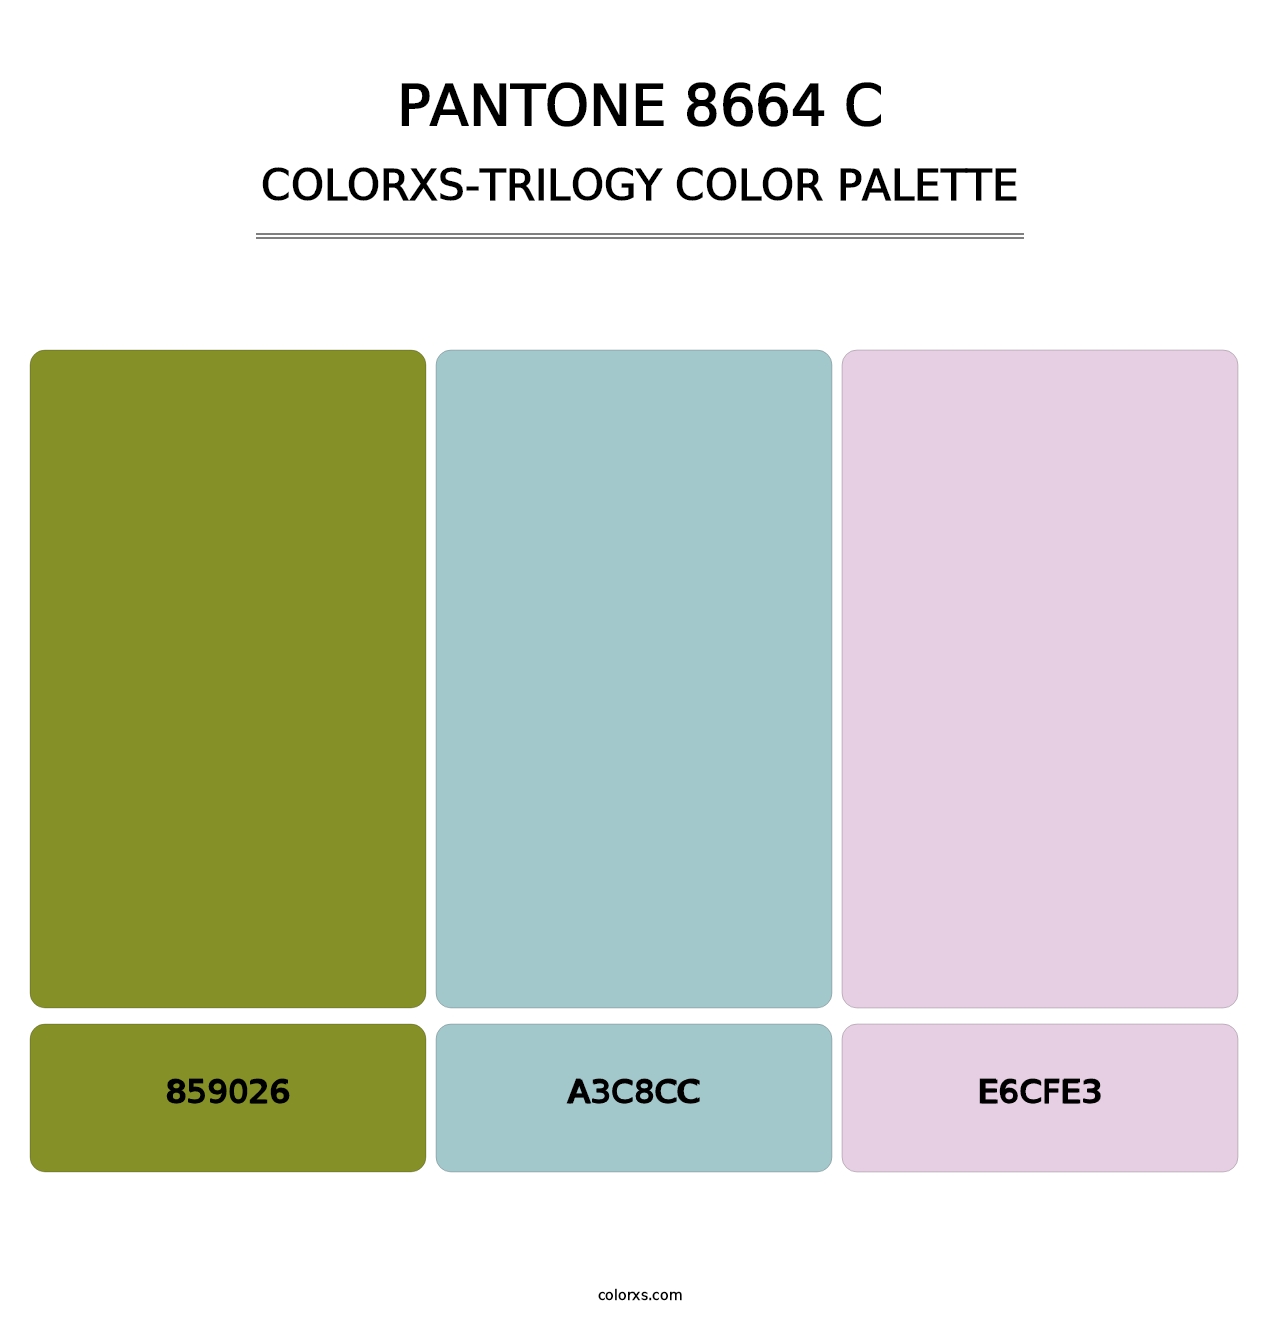 PANTONE 8664 C - Colorxs Trilogy Palette